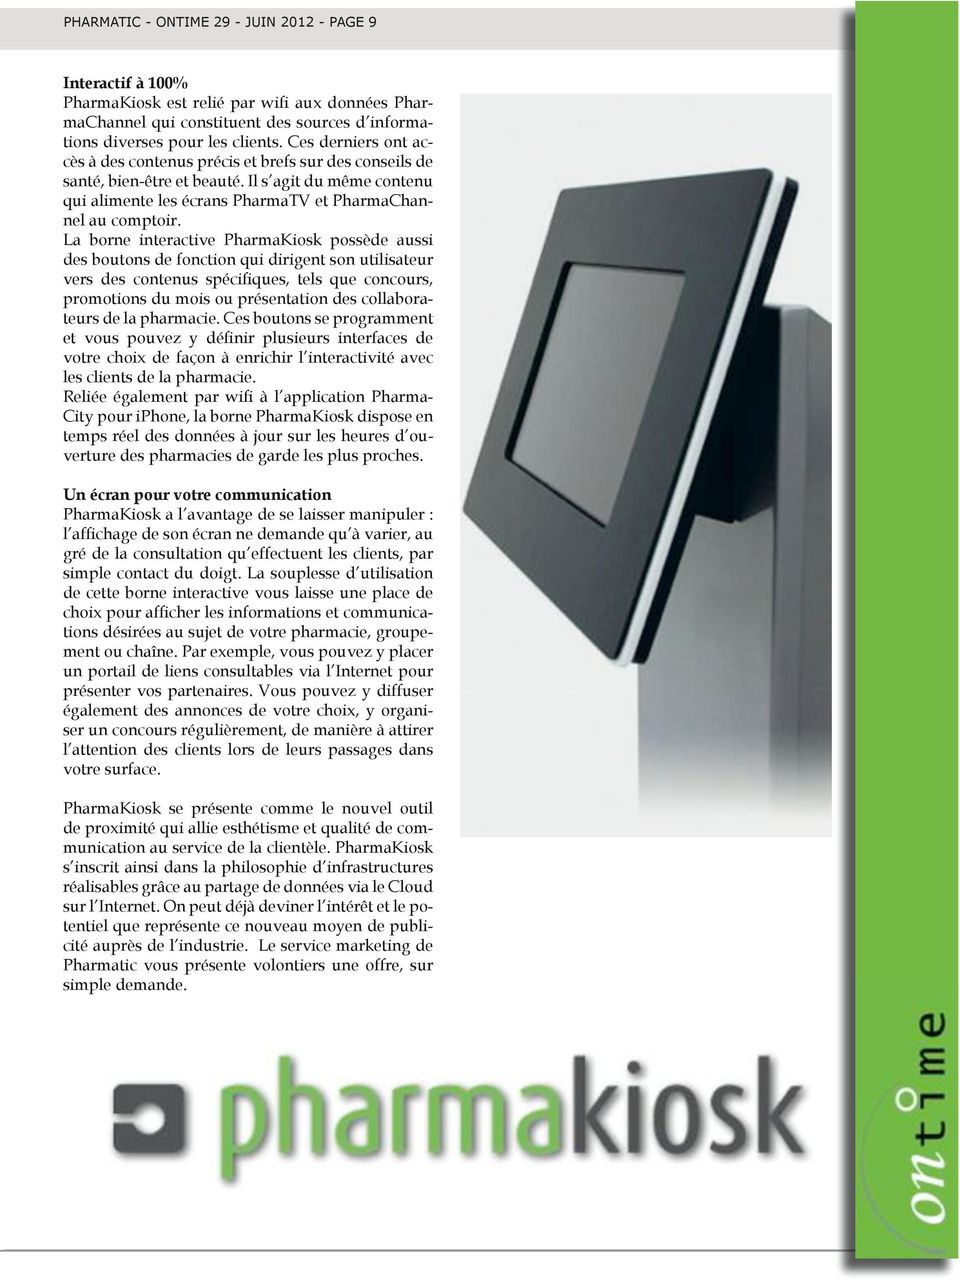 La borne interactive PharmaKiosk possède aussi des boutons de fonction qui dirigent son utilisateur promotions du mois ou présentation des collaborateurs de la pharmacie.